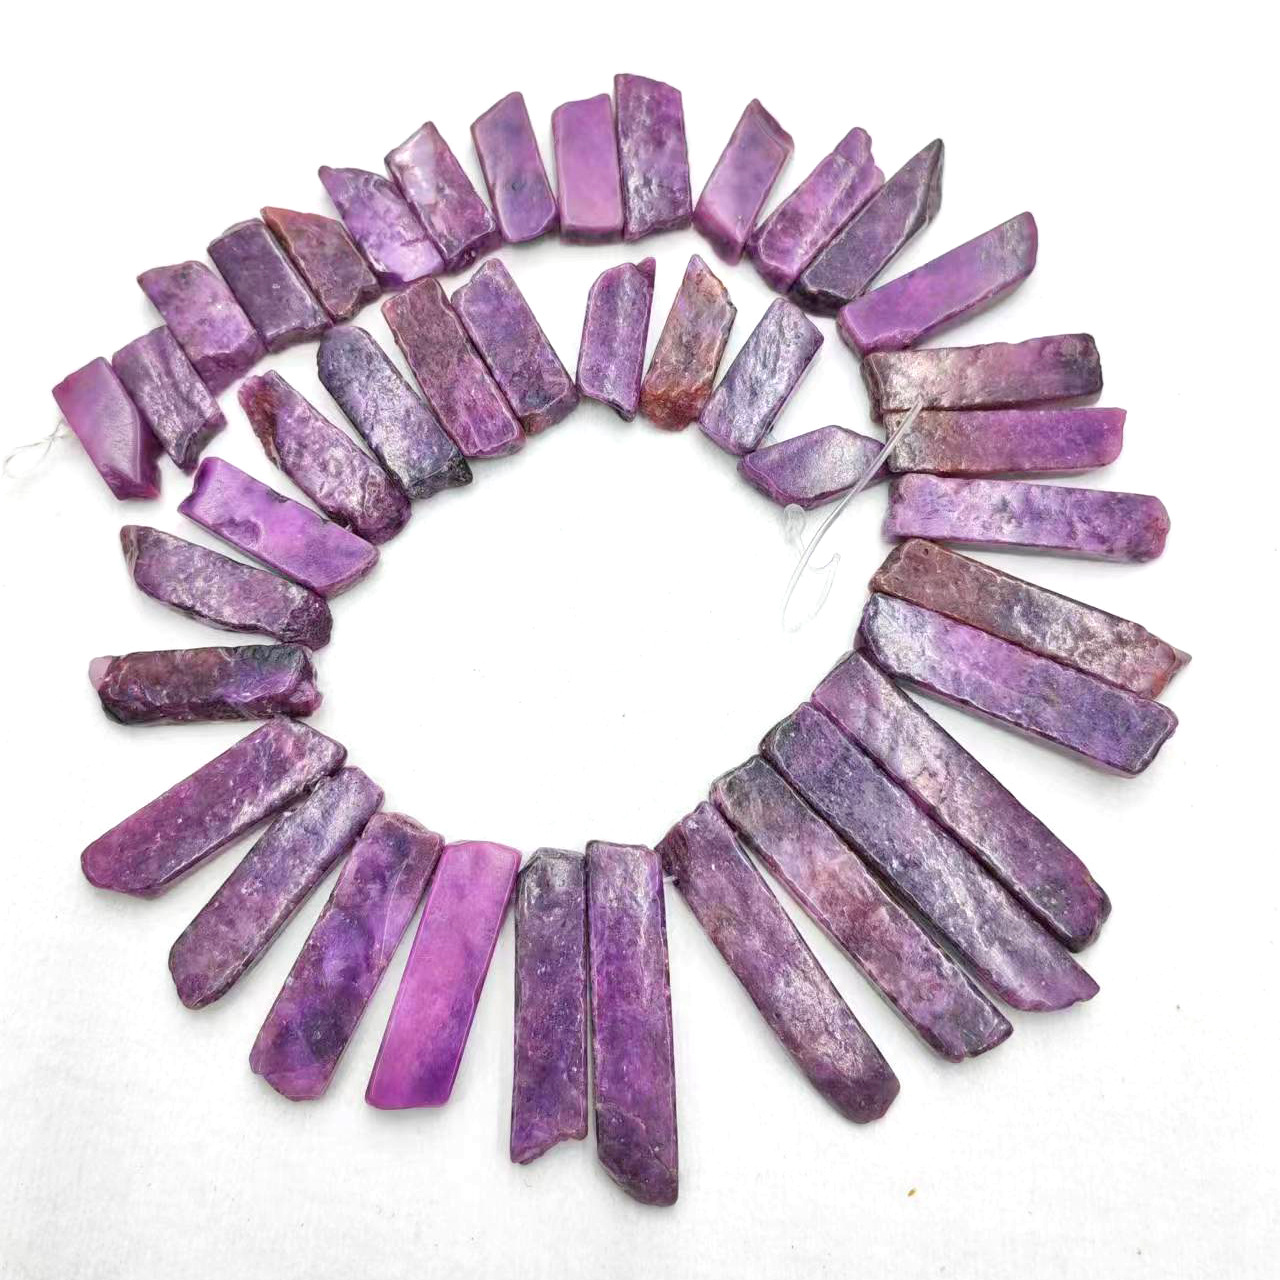 Lithium purple stone